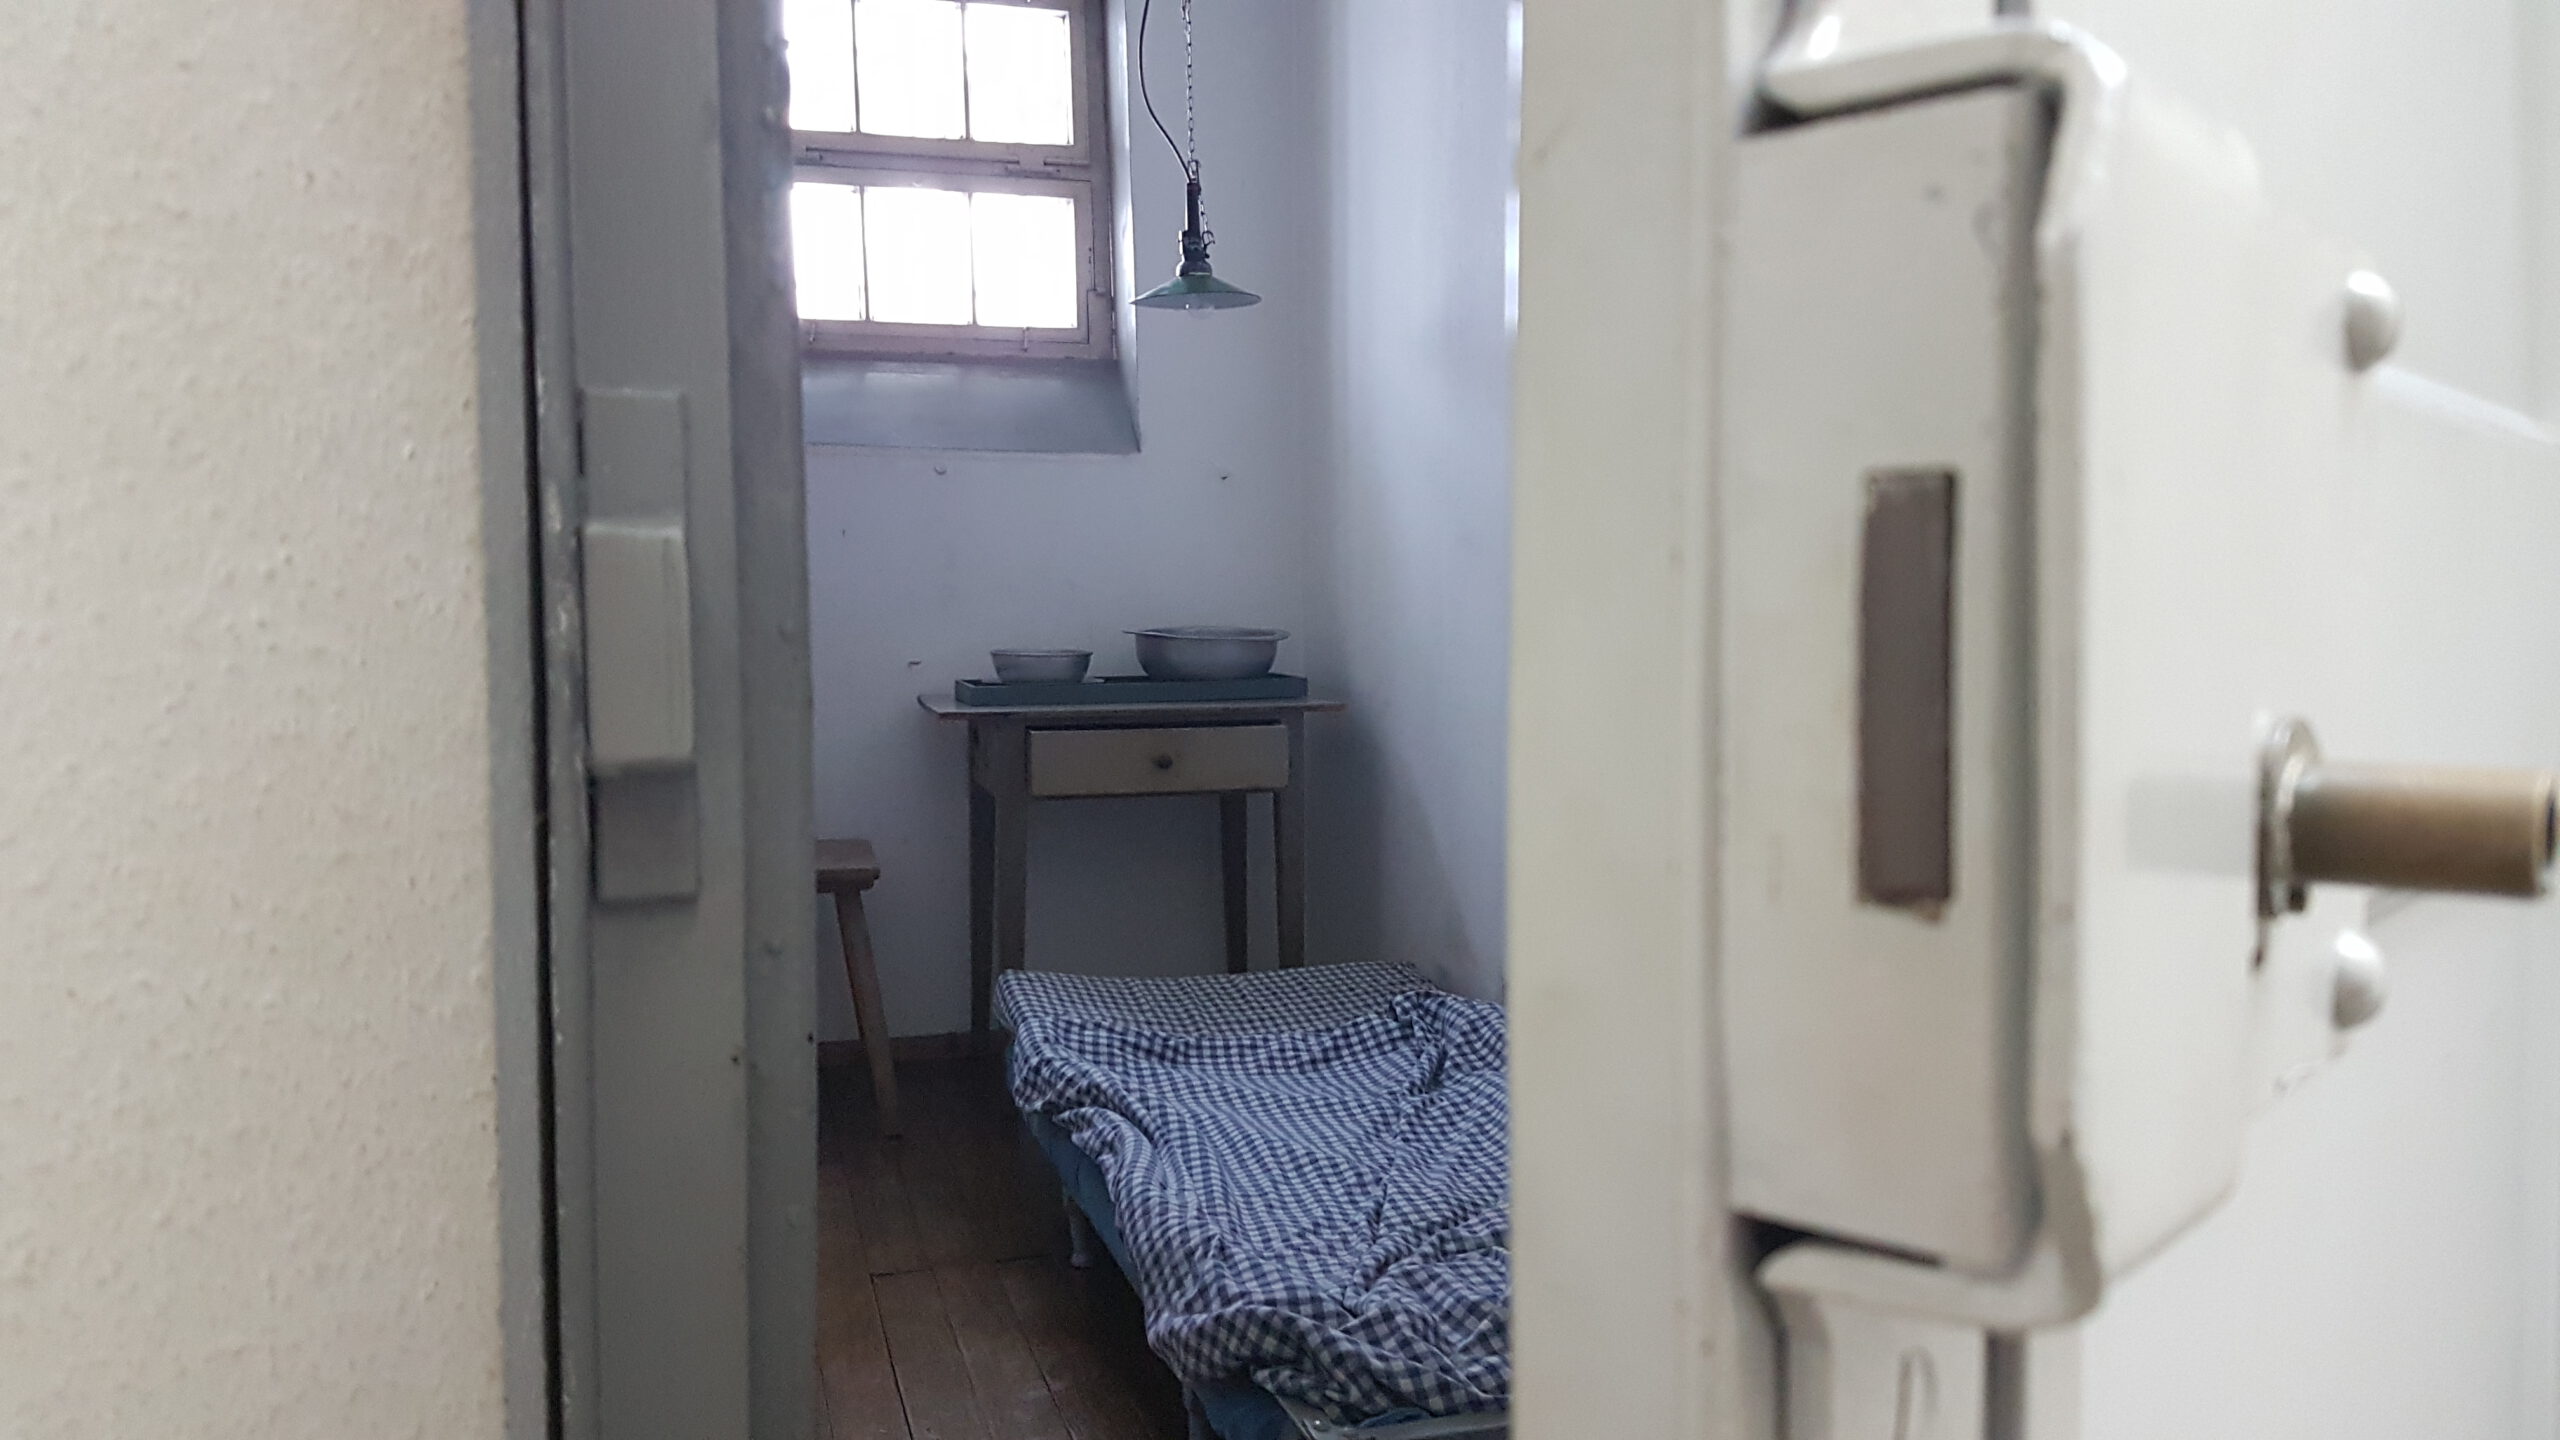 Blick durch eine halb geöffnete Zellentür in eine Haftzelle mit hochklappbarem Bett mit blau-karierter Bettwäsche, einem Holztisch mit zwei Schüsseln und einem Holzstuhl